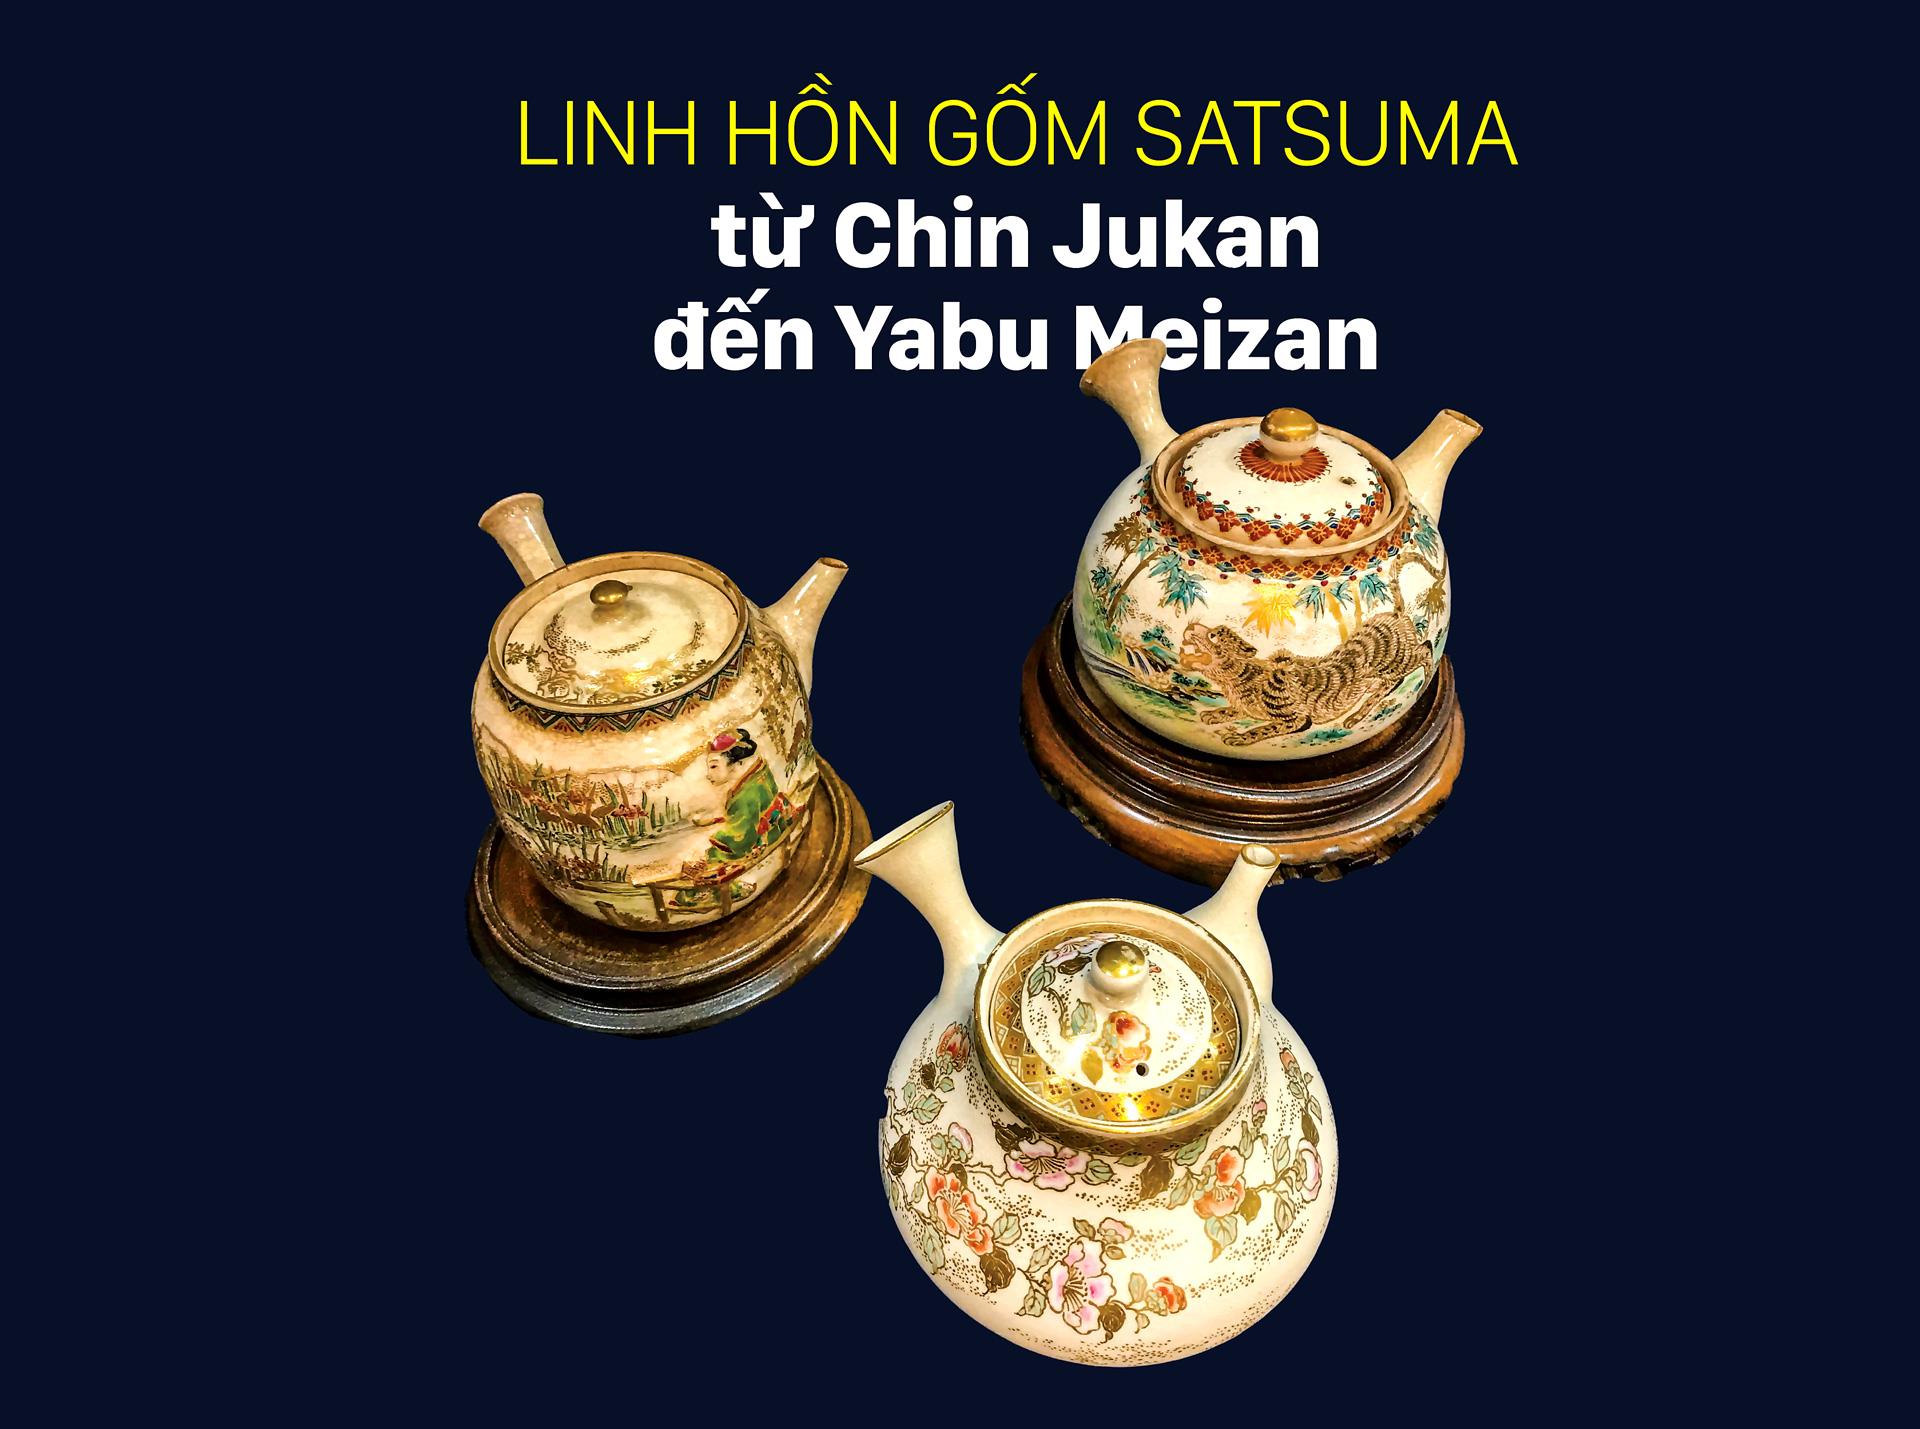 Linh hồn gốm Satsuma từ Chin Jukan đến Yabu Meizan